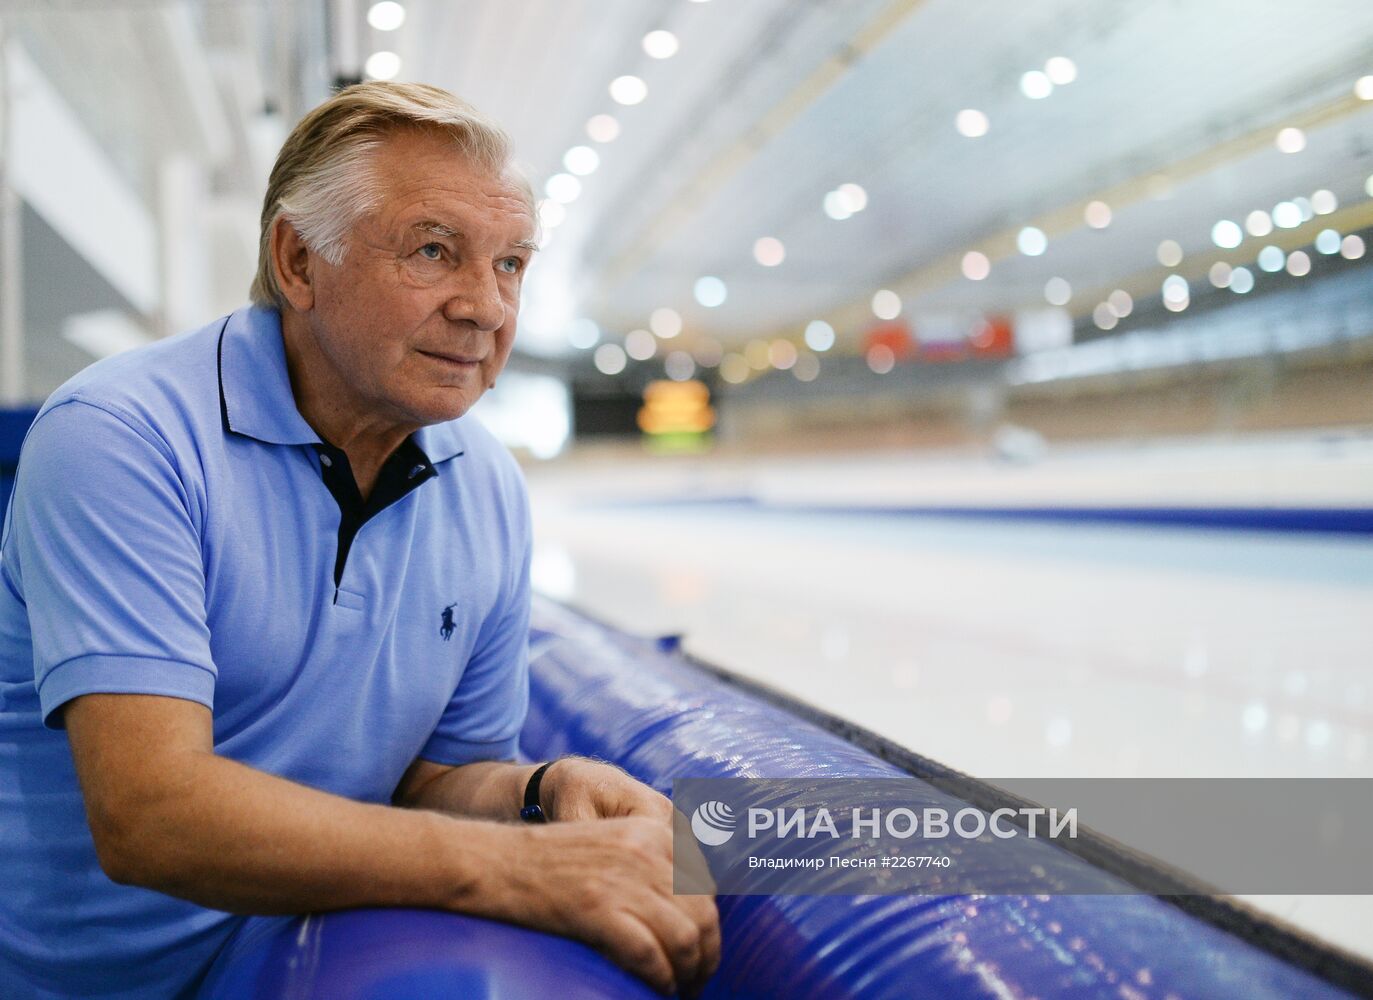 Валерий Муратов - призер Олимпийских игр по конькобежному спорту